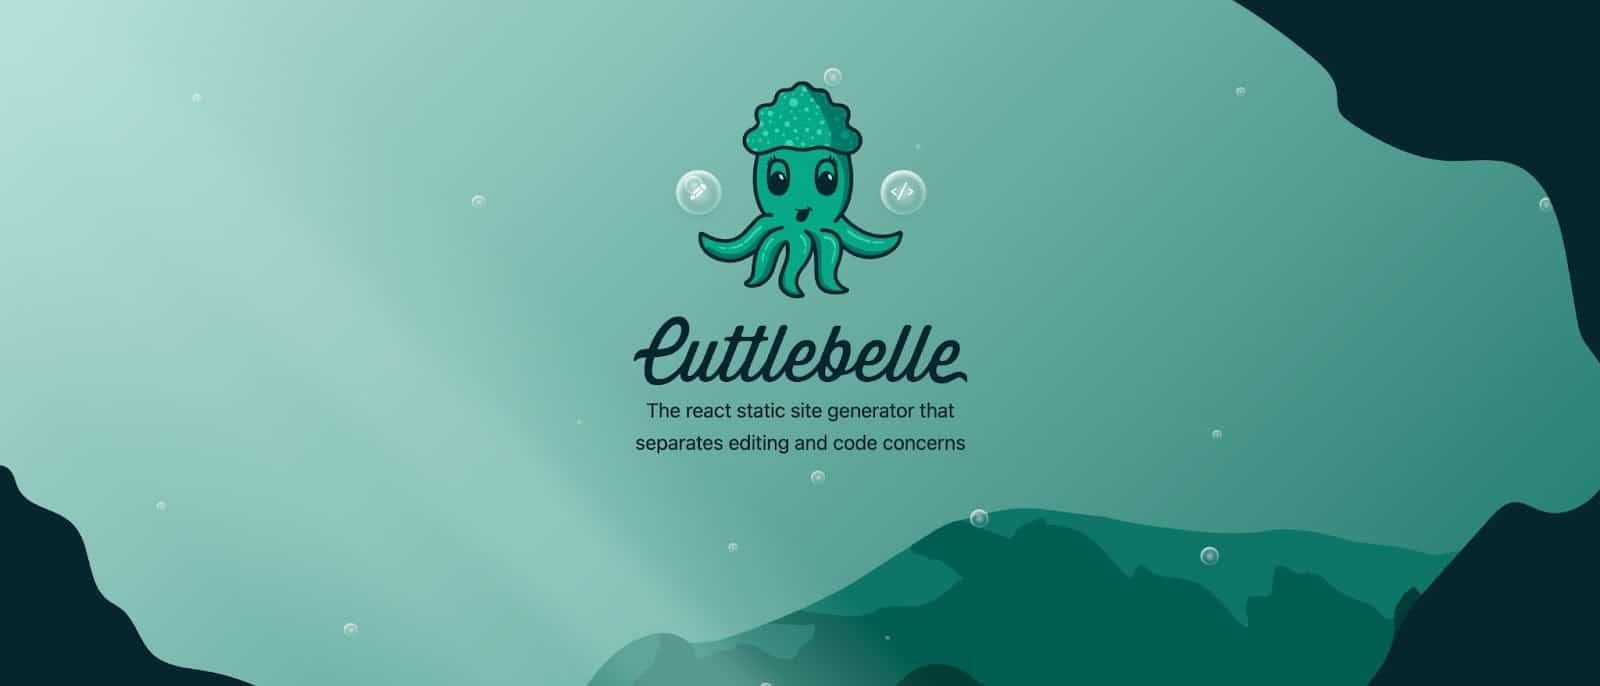 หน้าแรกของเว็บไซต์ Cuttlebelle